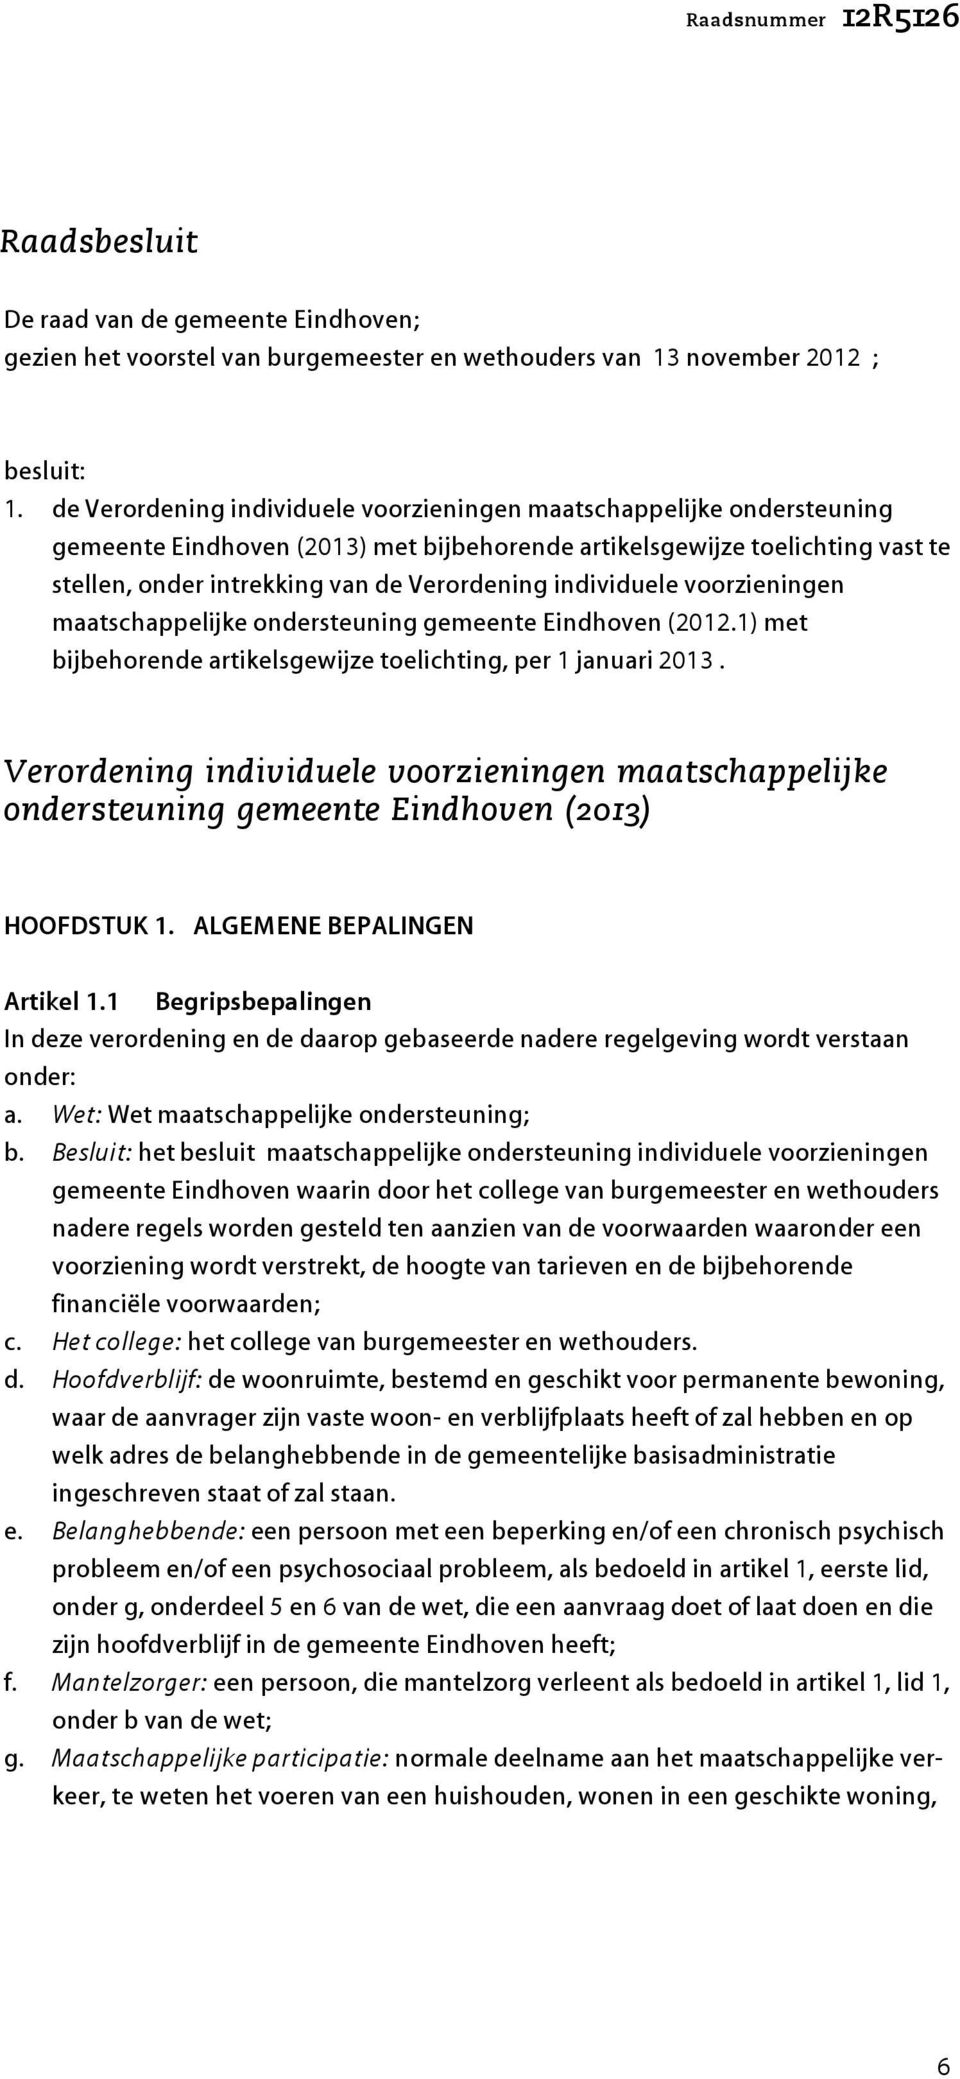 individuele voorzieningen maatschappelijke ondersteuning gemeente Eindhoven (2012.1) met bijbehorende artikelsgewijze toelichting, per 1 januari 2013.